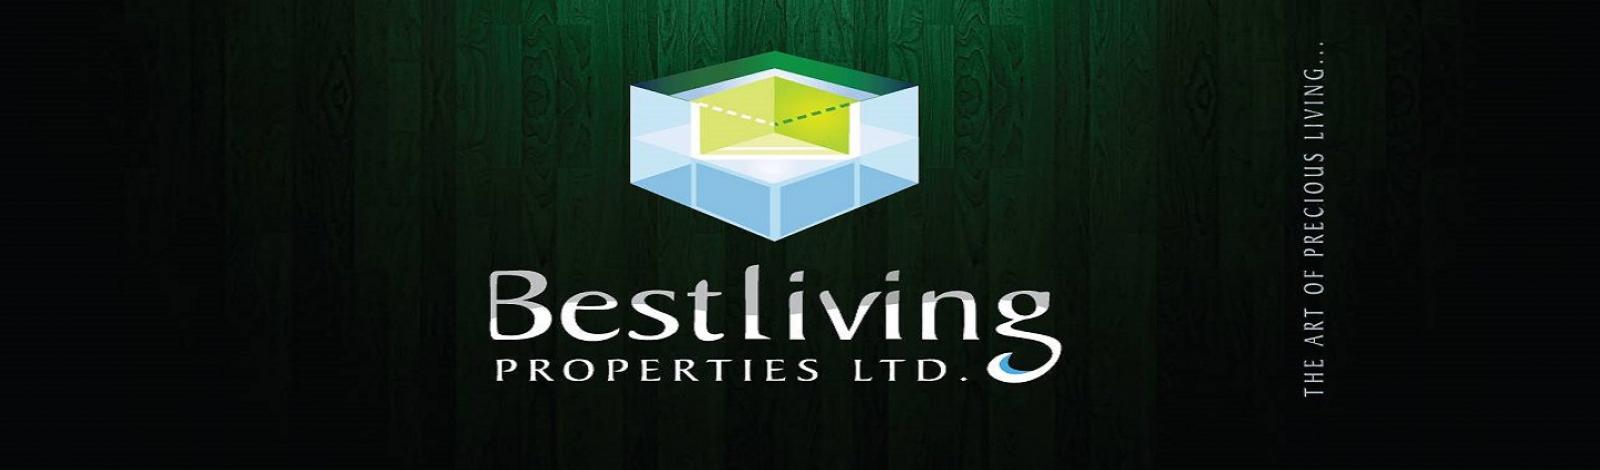 Bestliving Properties Ltd banner